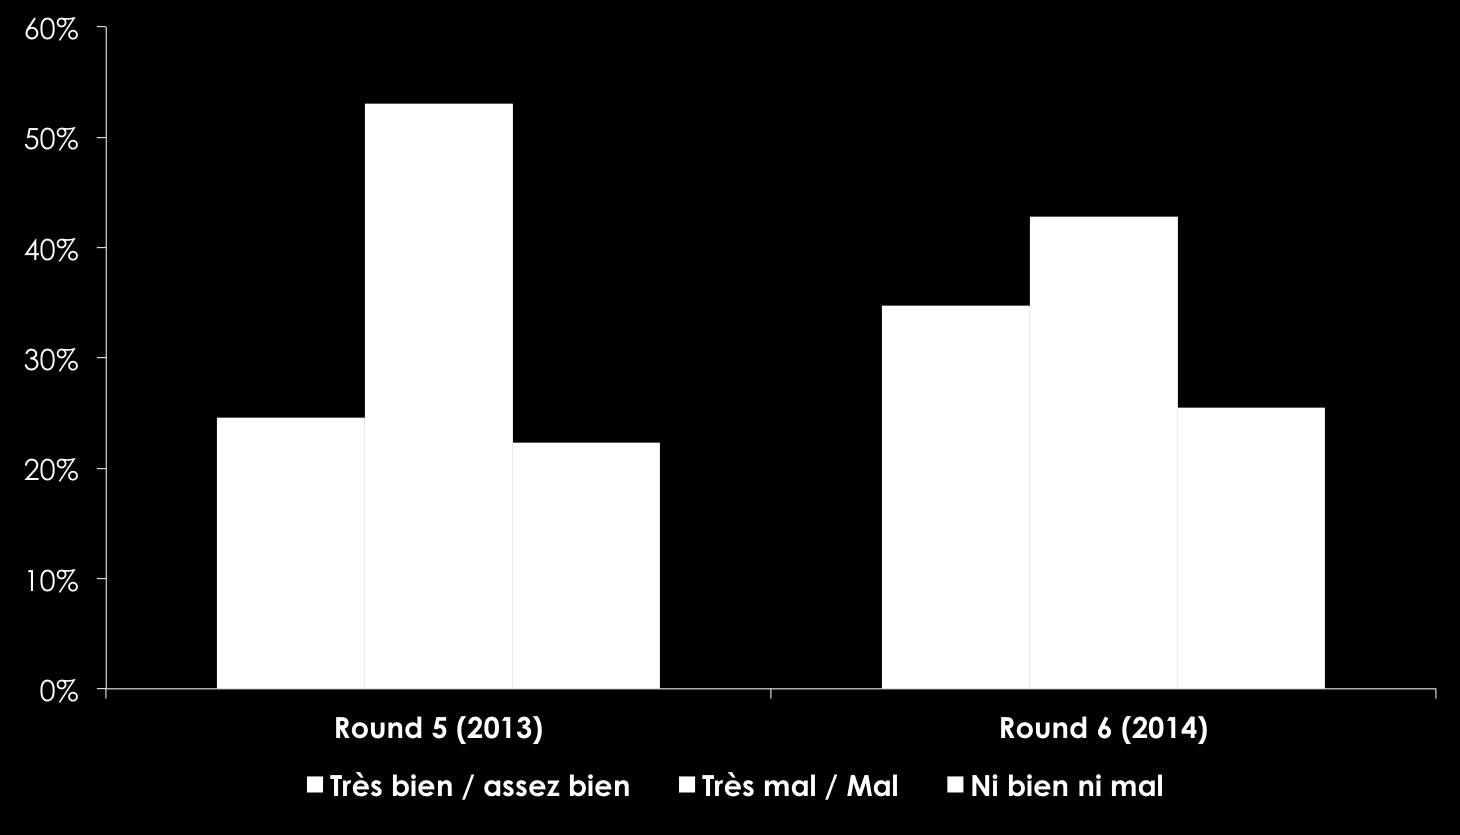 Entre 2013 et 2014, les Ivoiriens apprécient légèrement mieux leurs conditions de vie, qui restent cependant assez